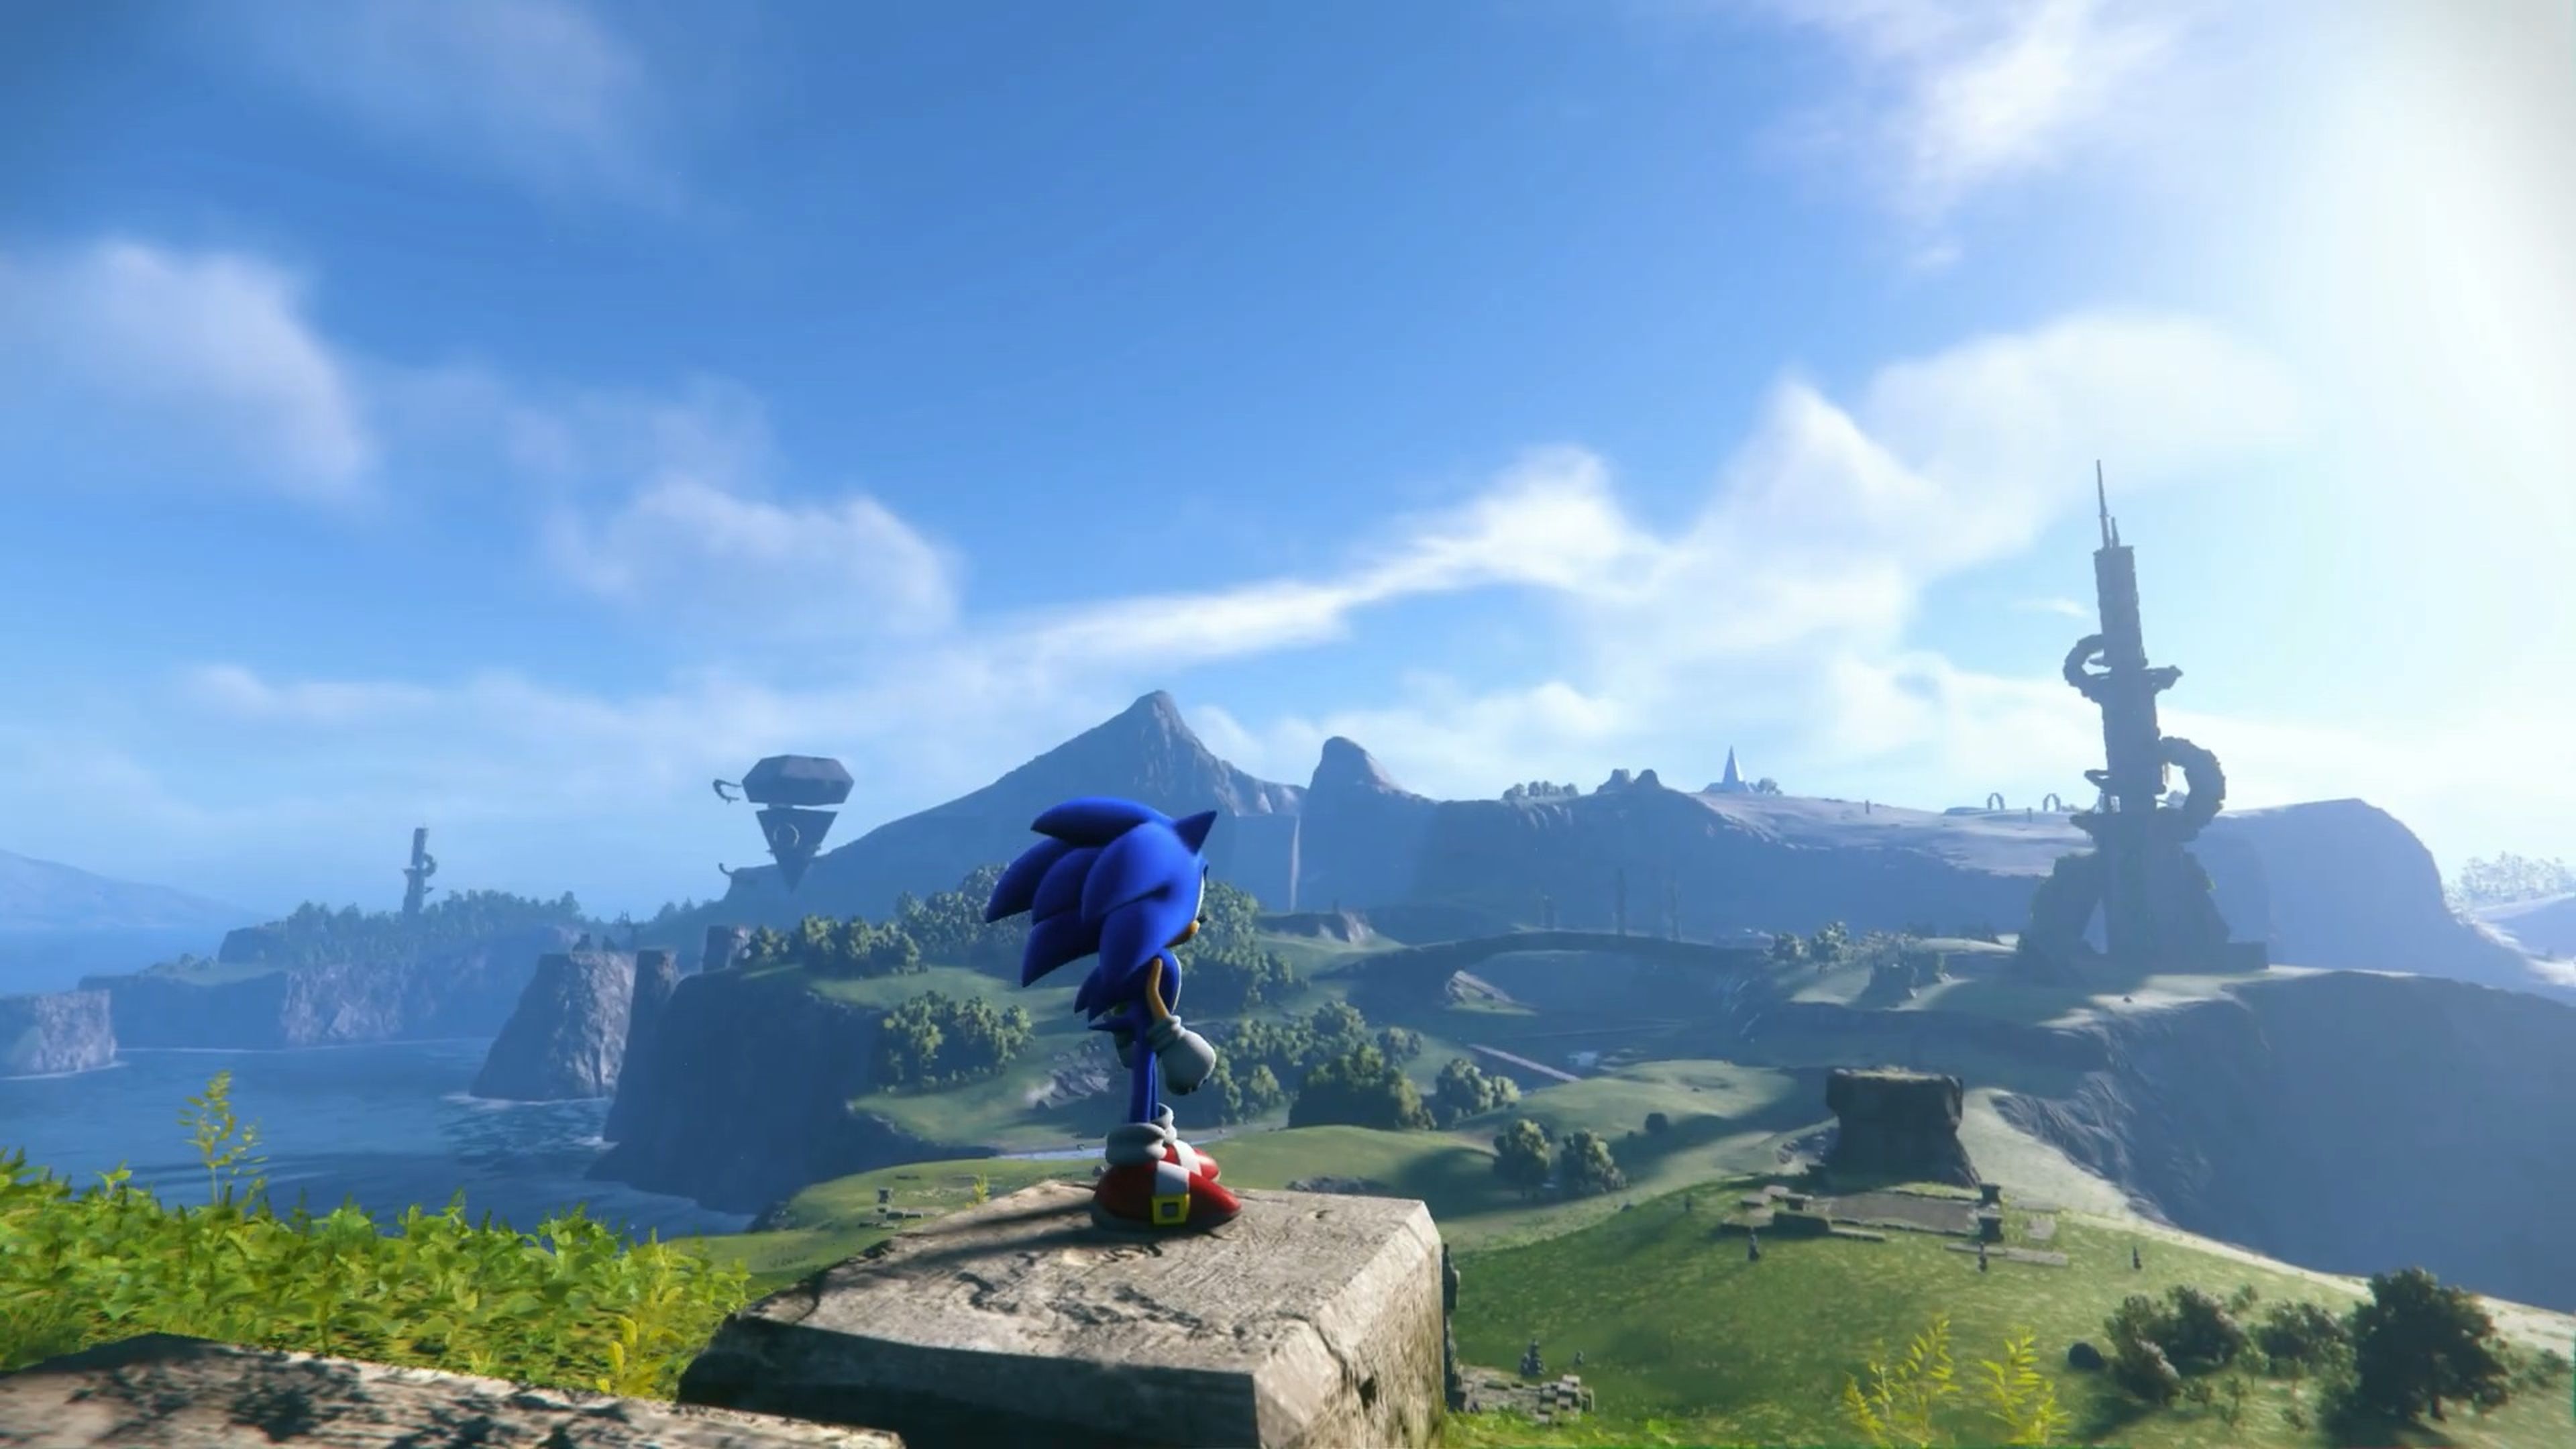 Sonic Frontiers ya es el mejor juego de la saga, según usuarios de  Metacritic